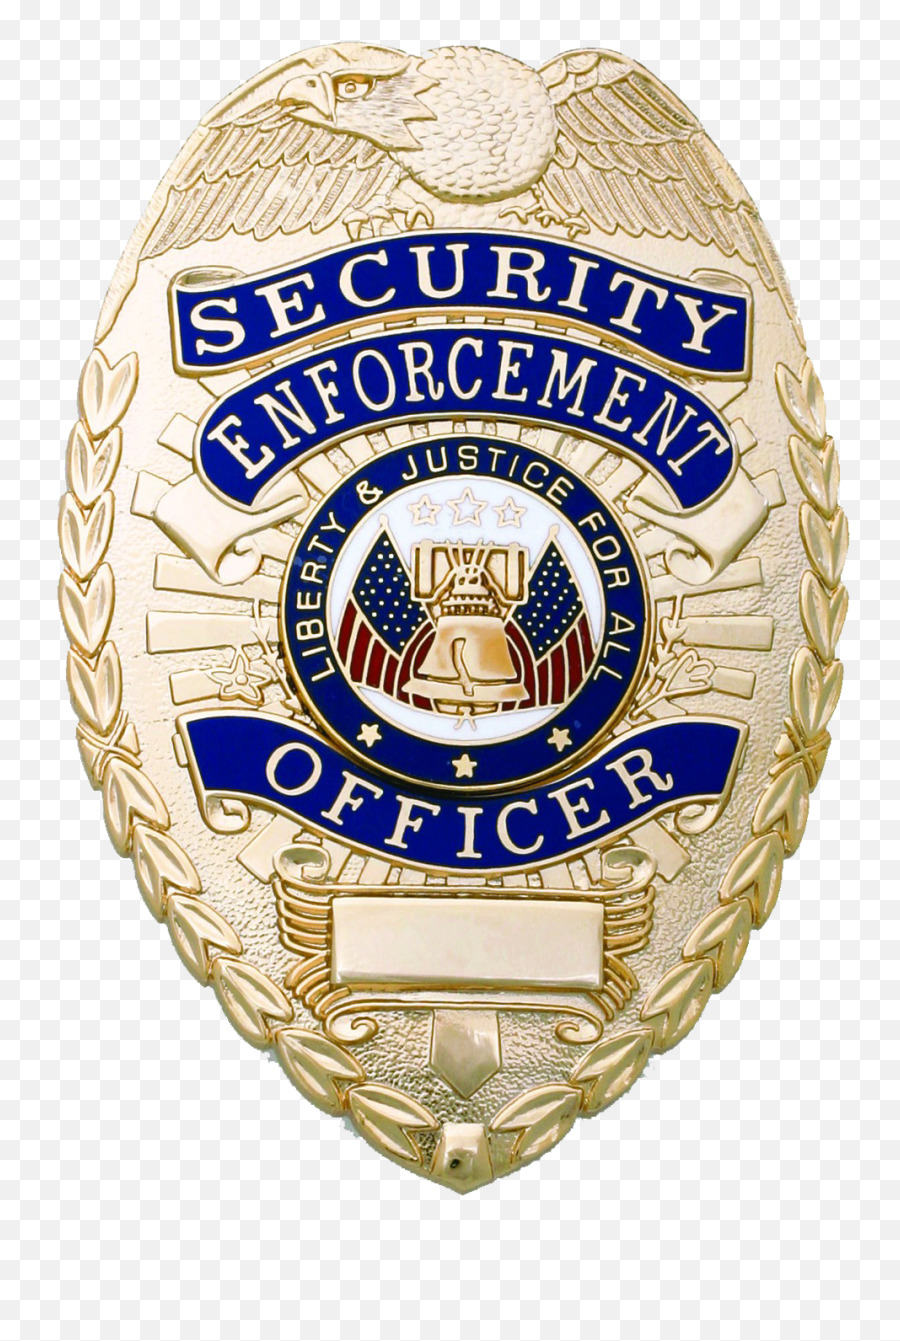 Badge Holder With Belt Clip Transparent - Silver Security Enforcement Officer Badge Png,Security Badge Png